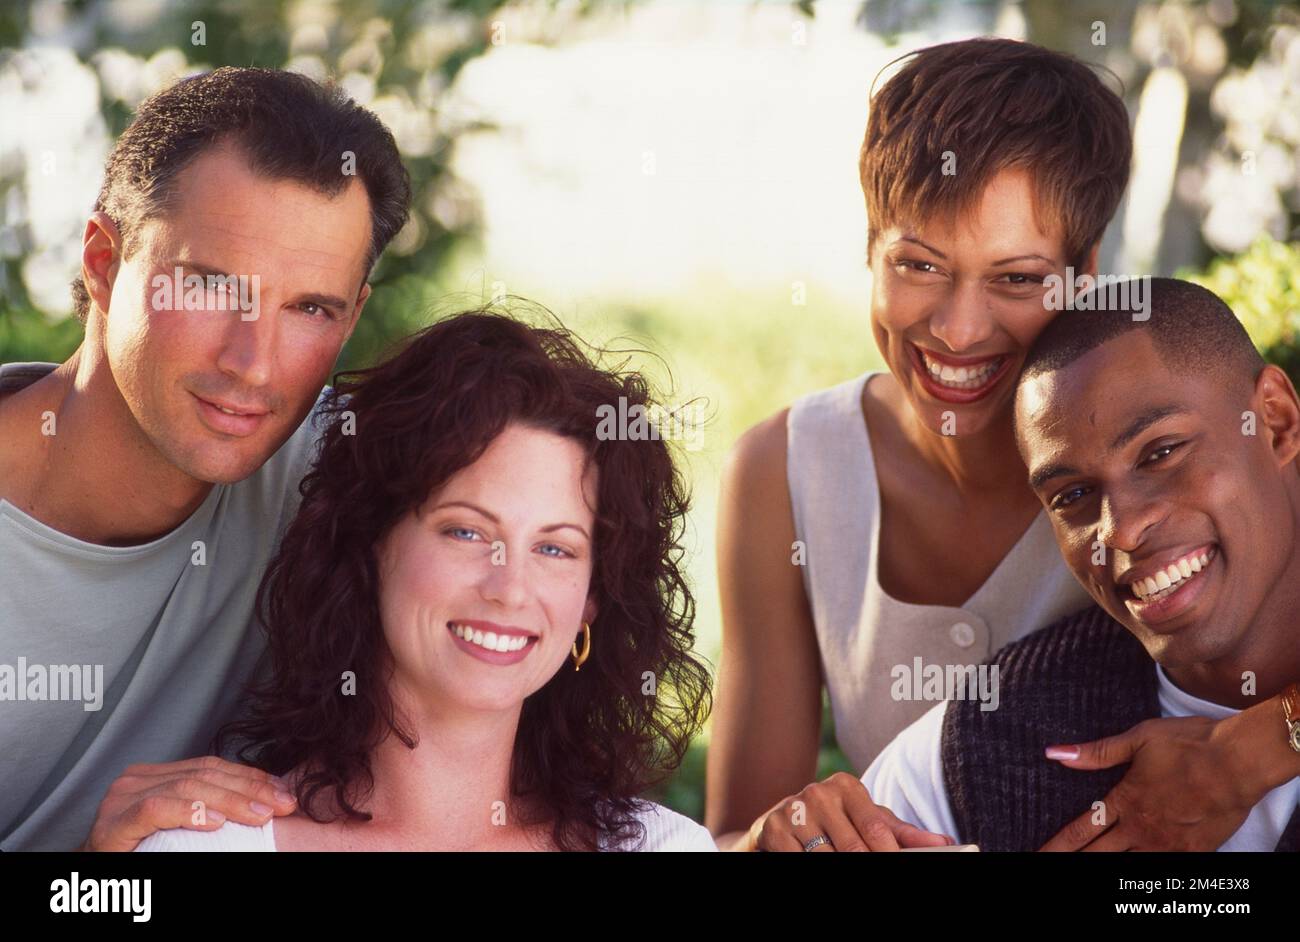 Zwei Paare, die für ein Kamerafoto posieren. Kaukasisches Paar und afroamerikanisches Paar, das lächelt Stockfoto